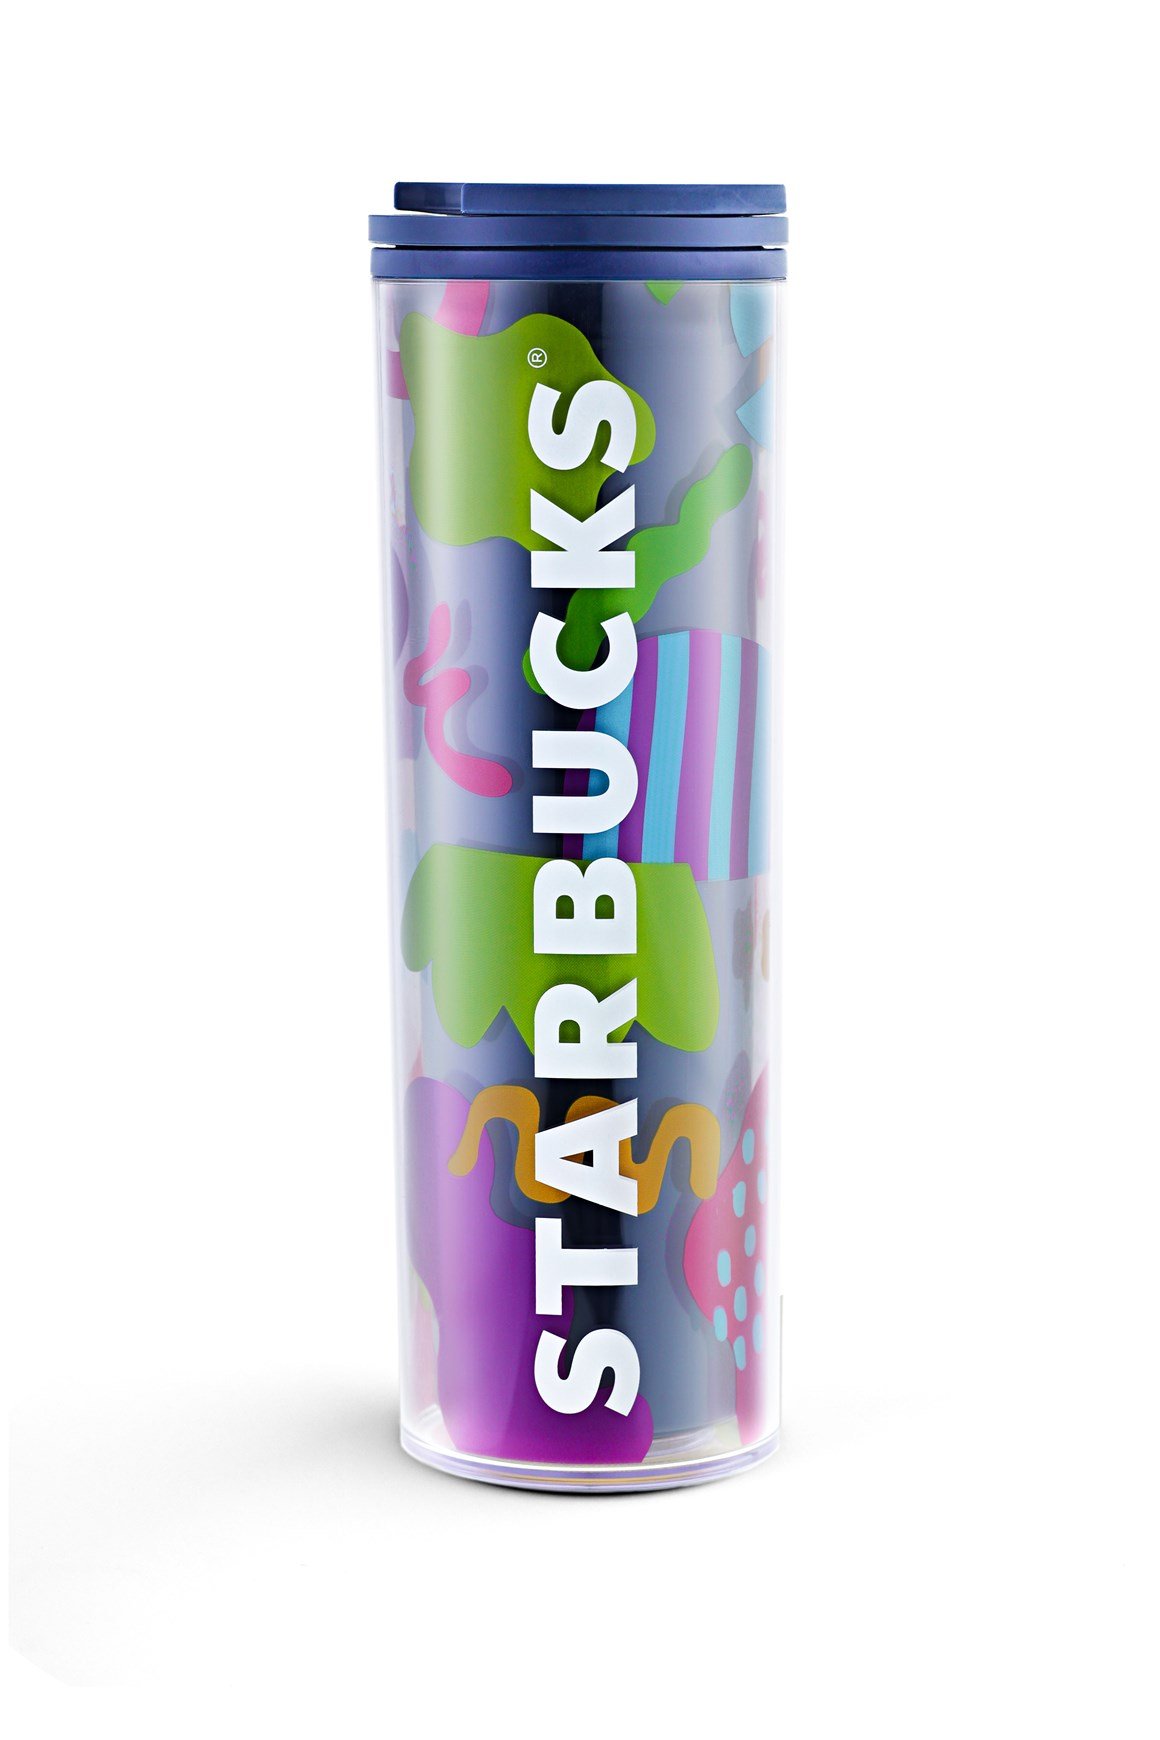 Starbucks® Çiçek Desenli Paslanmaz Çelik Termos - Mavi - 473 ml - 11140948